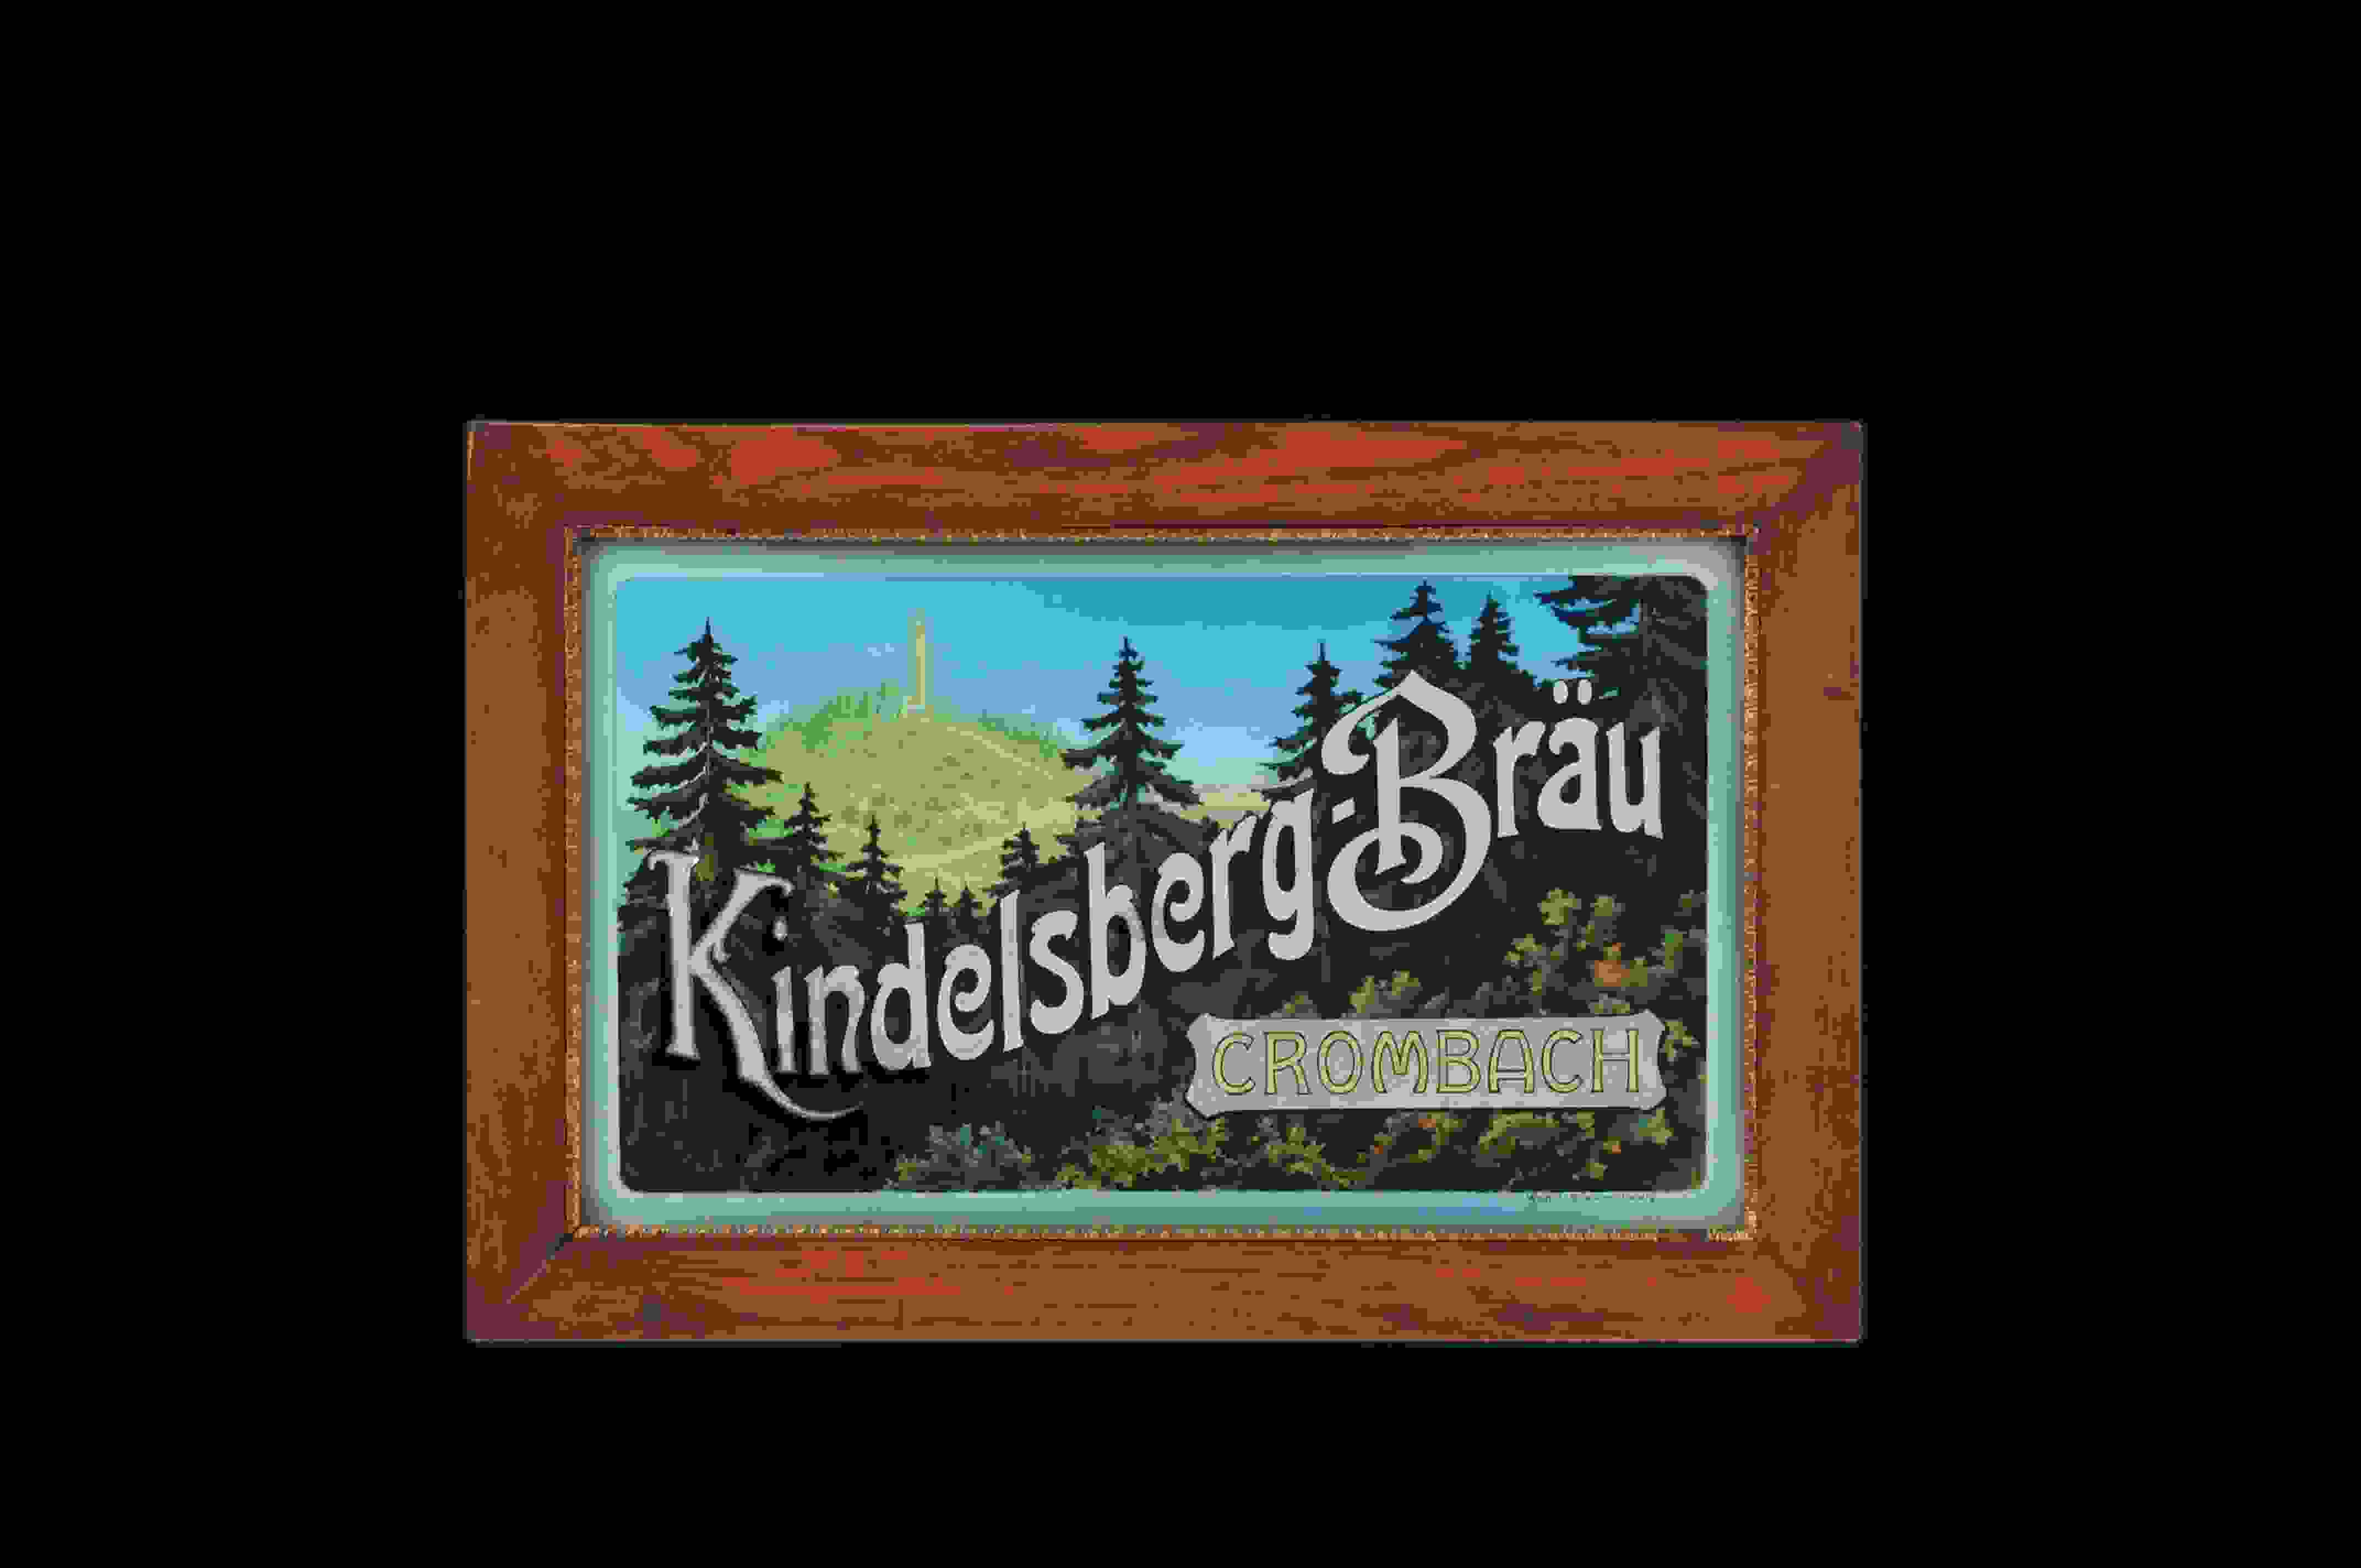 Kindelsberg-Bräu Crombach 